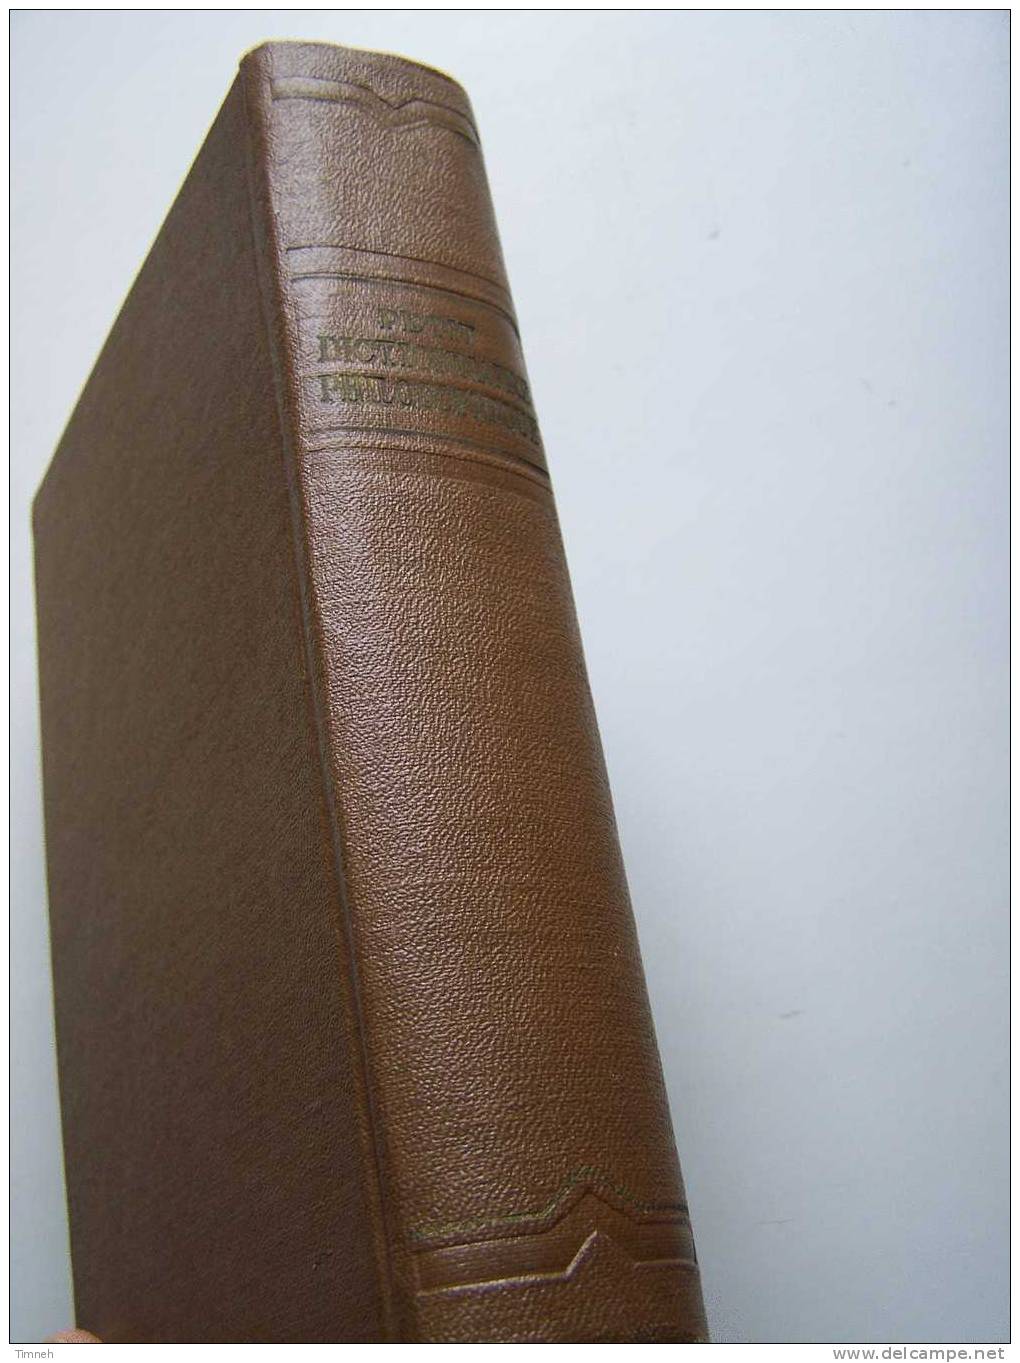 PETIT DICTIONNAIRE PHILOSOPHIQUE-Rosenthal Ioudine-1955 éditions en langues étrangères MOSCOU-en français-